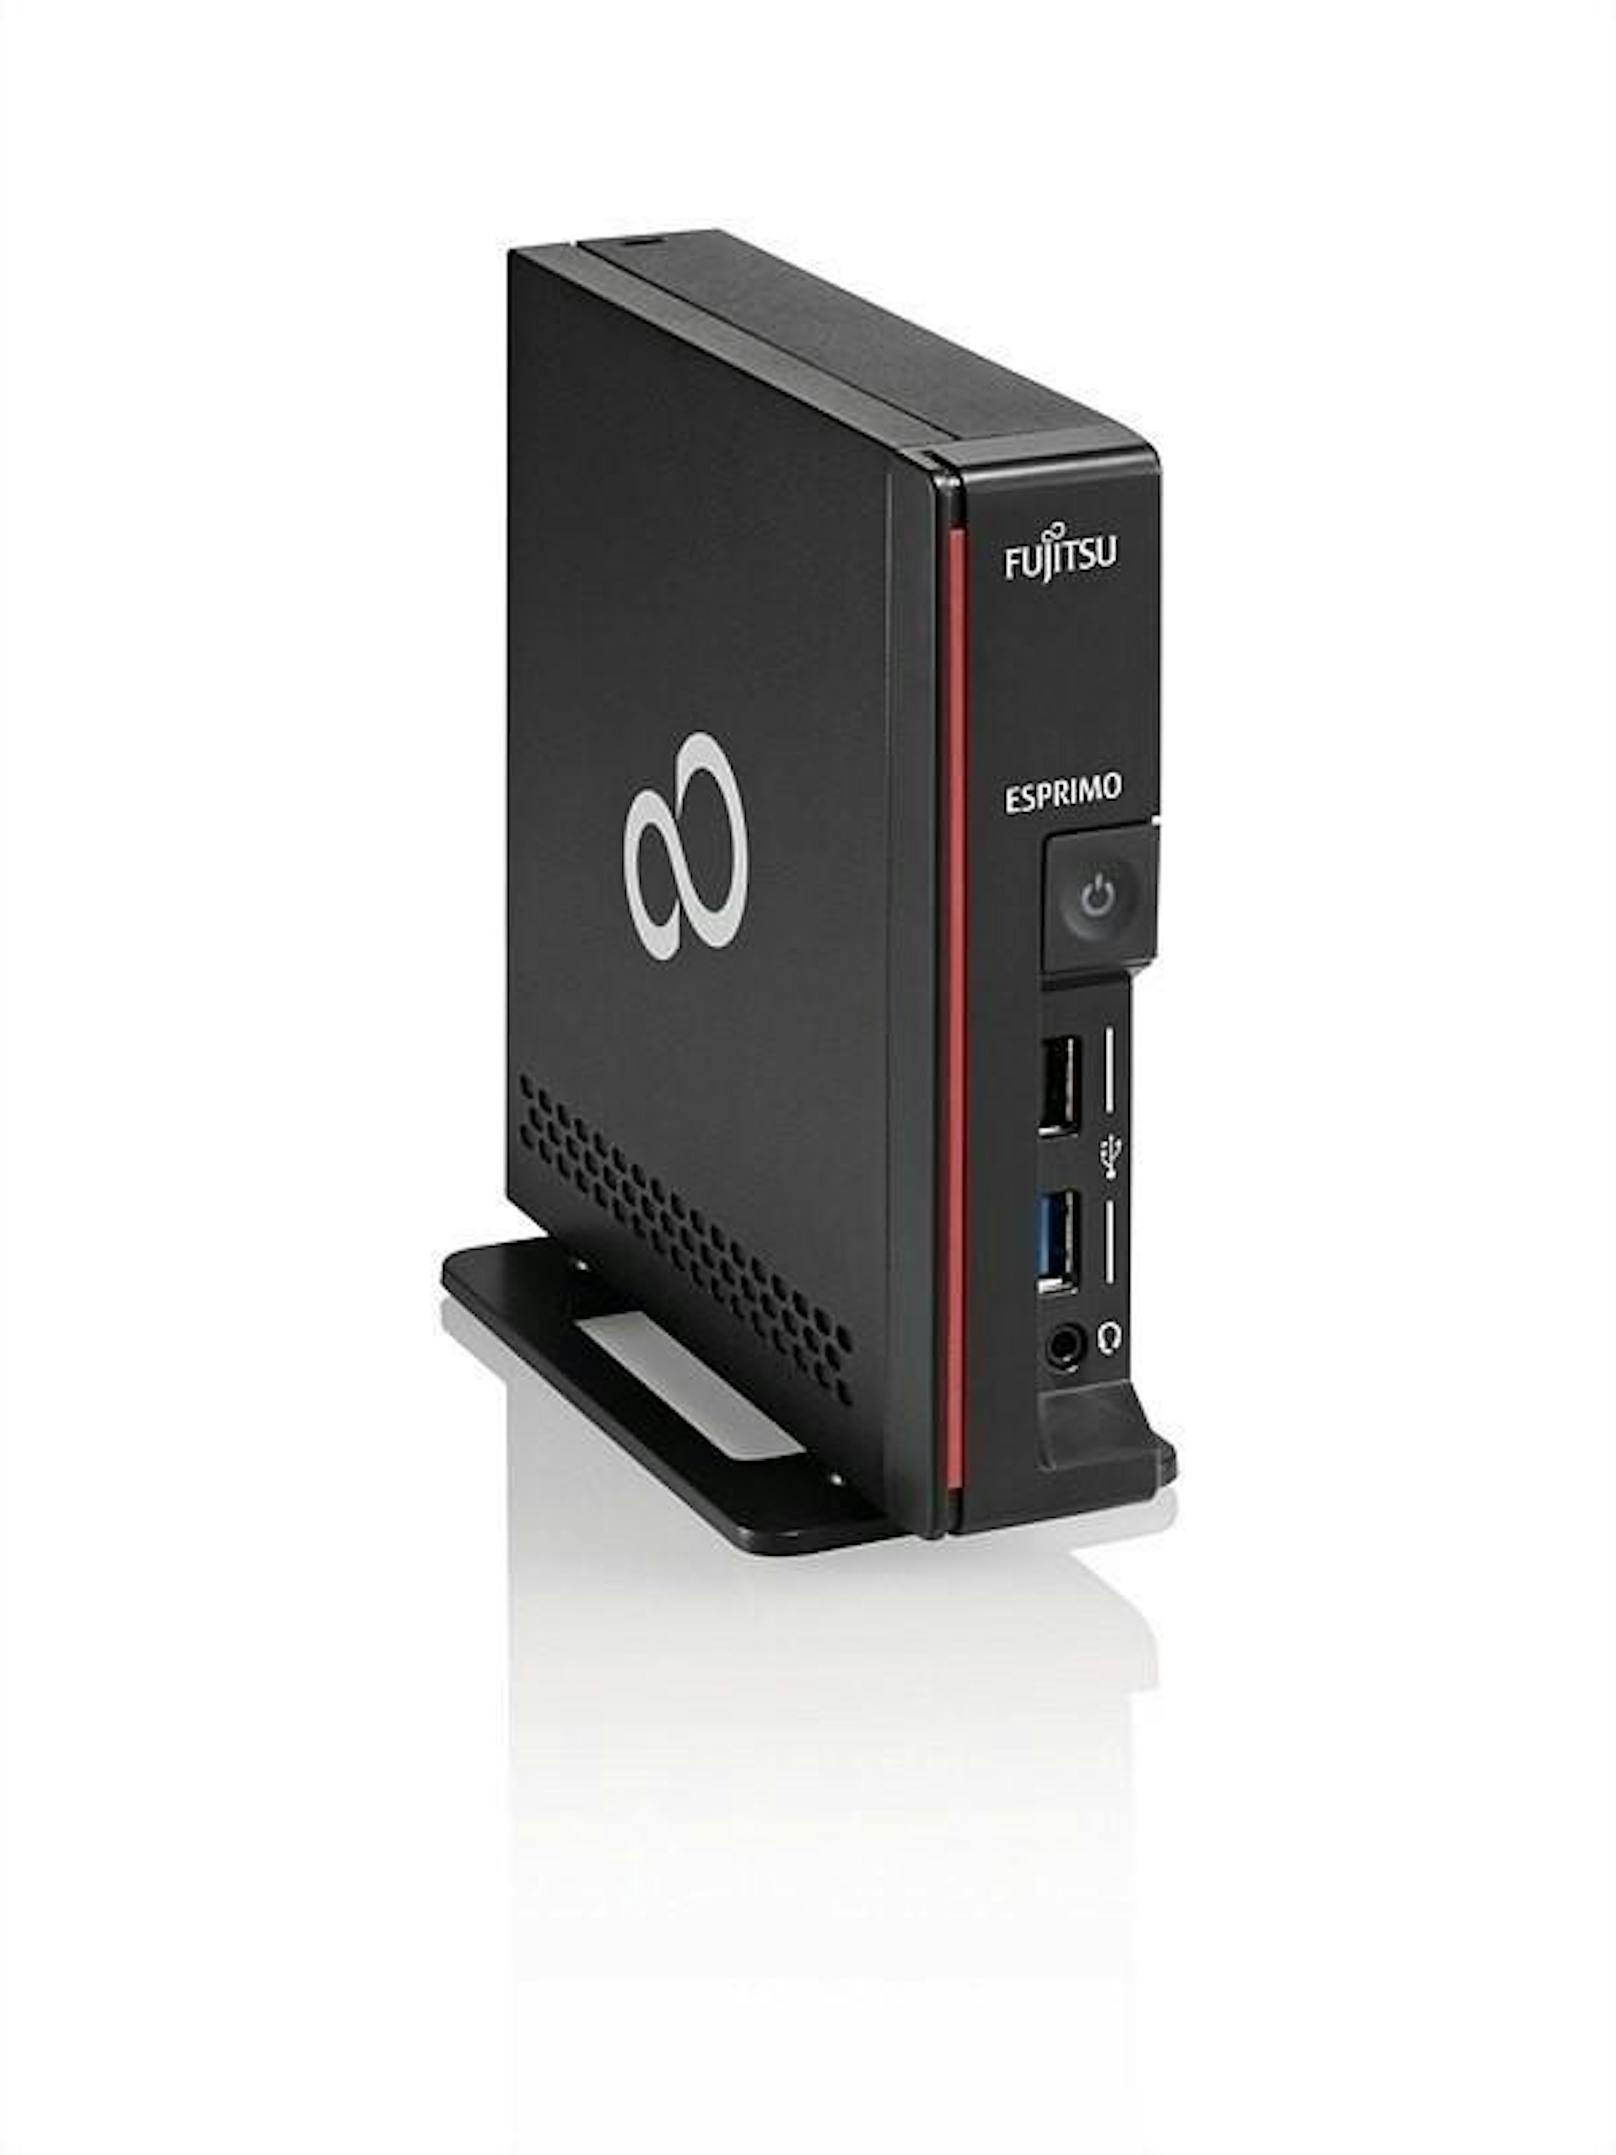 <b>30. Oktober 2018:</b> Fujitsu hat seinen kleinsten Desktop-PC vorgestellt. Mit einem Gesamtvolumen von nur 0,86 Liter ist der Esprimo G558 kompakt genug, um an der Rückseite eines Monitors montiert zu werden. Angeschlossen an den Monitor P24-9 TE von Fujitsu können Nutzer den Desktop-PC mit nur einem USB-C-Kabel sowohl an das Stromnetz anschließen als auch mit dem Netzwerk verbinden. Das Ein- und Ausschalten des Monitors und des PCs kann so synchronisiert werden. Preis: rund 670 Euro.